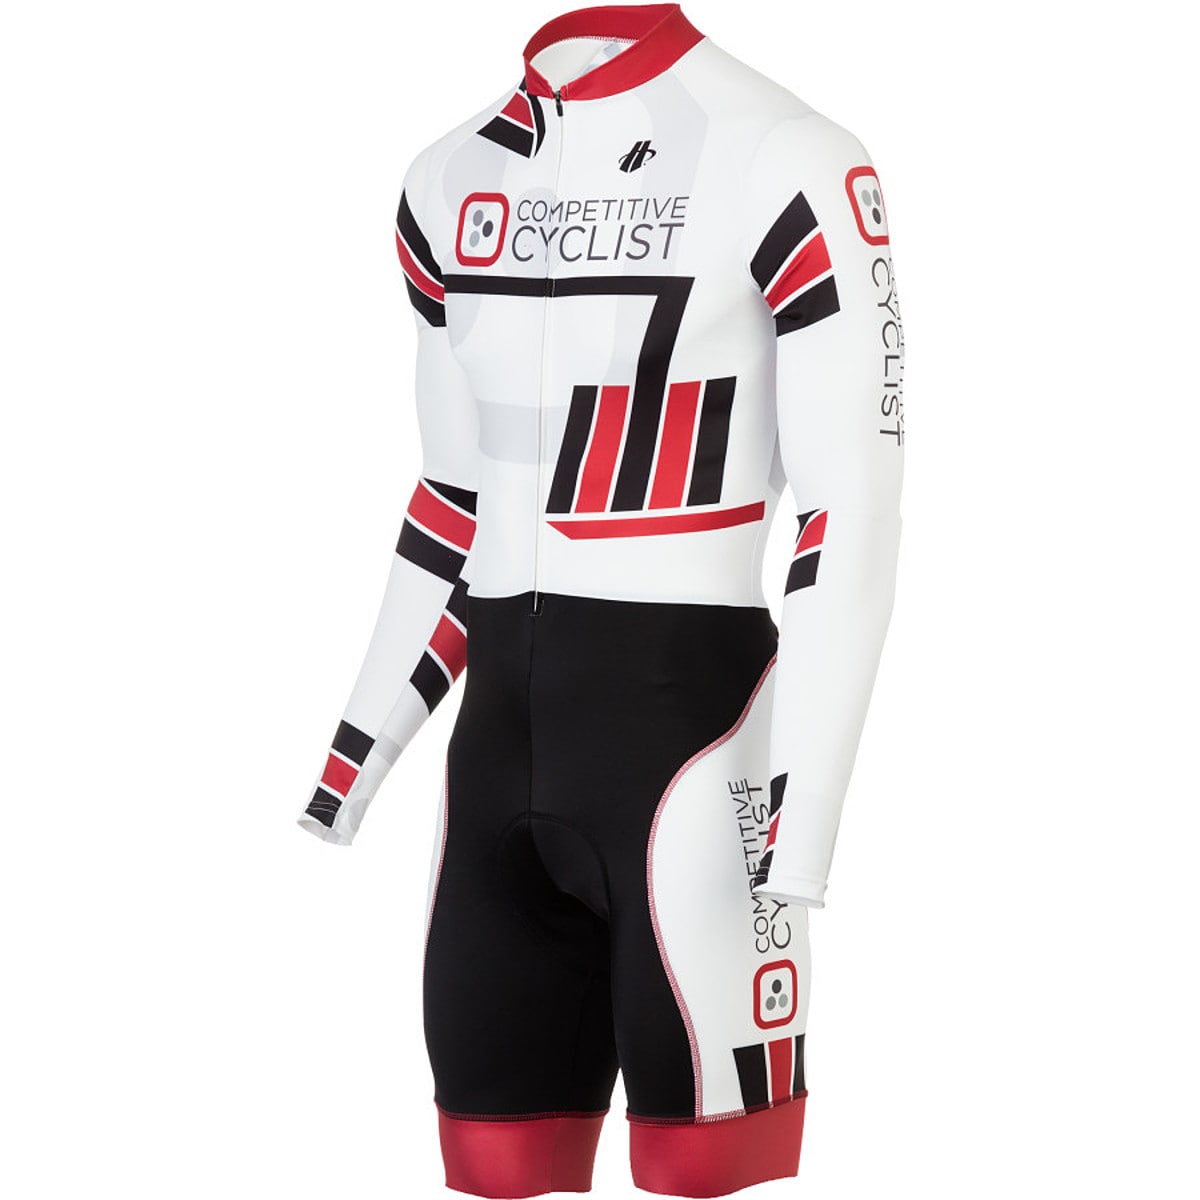 Hincapie Sportswear Velocity Competitive Cyclist Skinsuit - Men's - Men